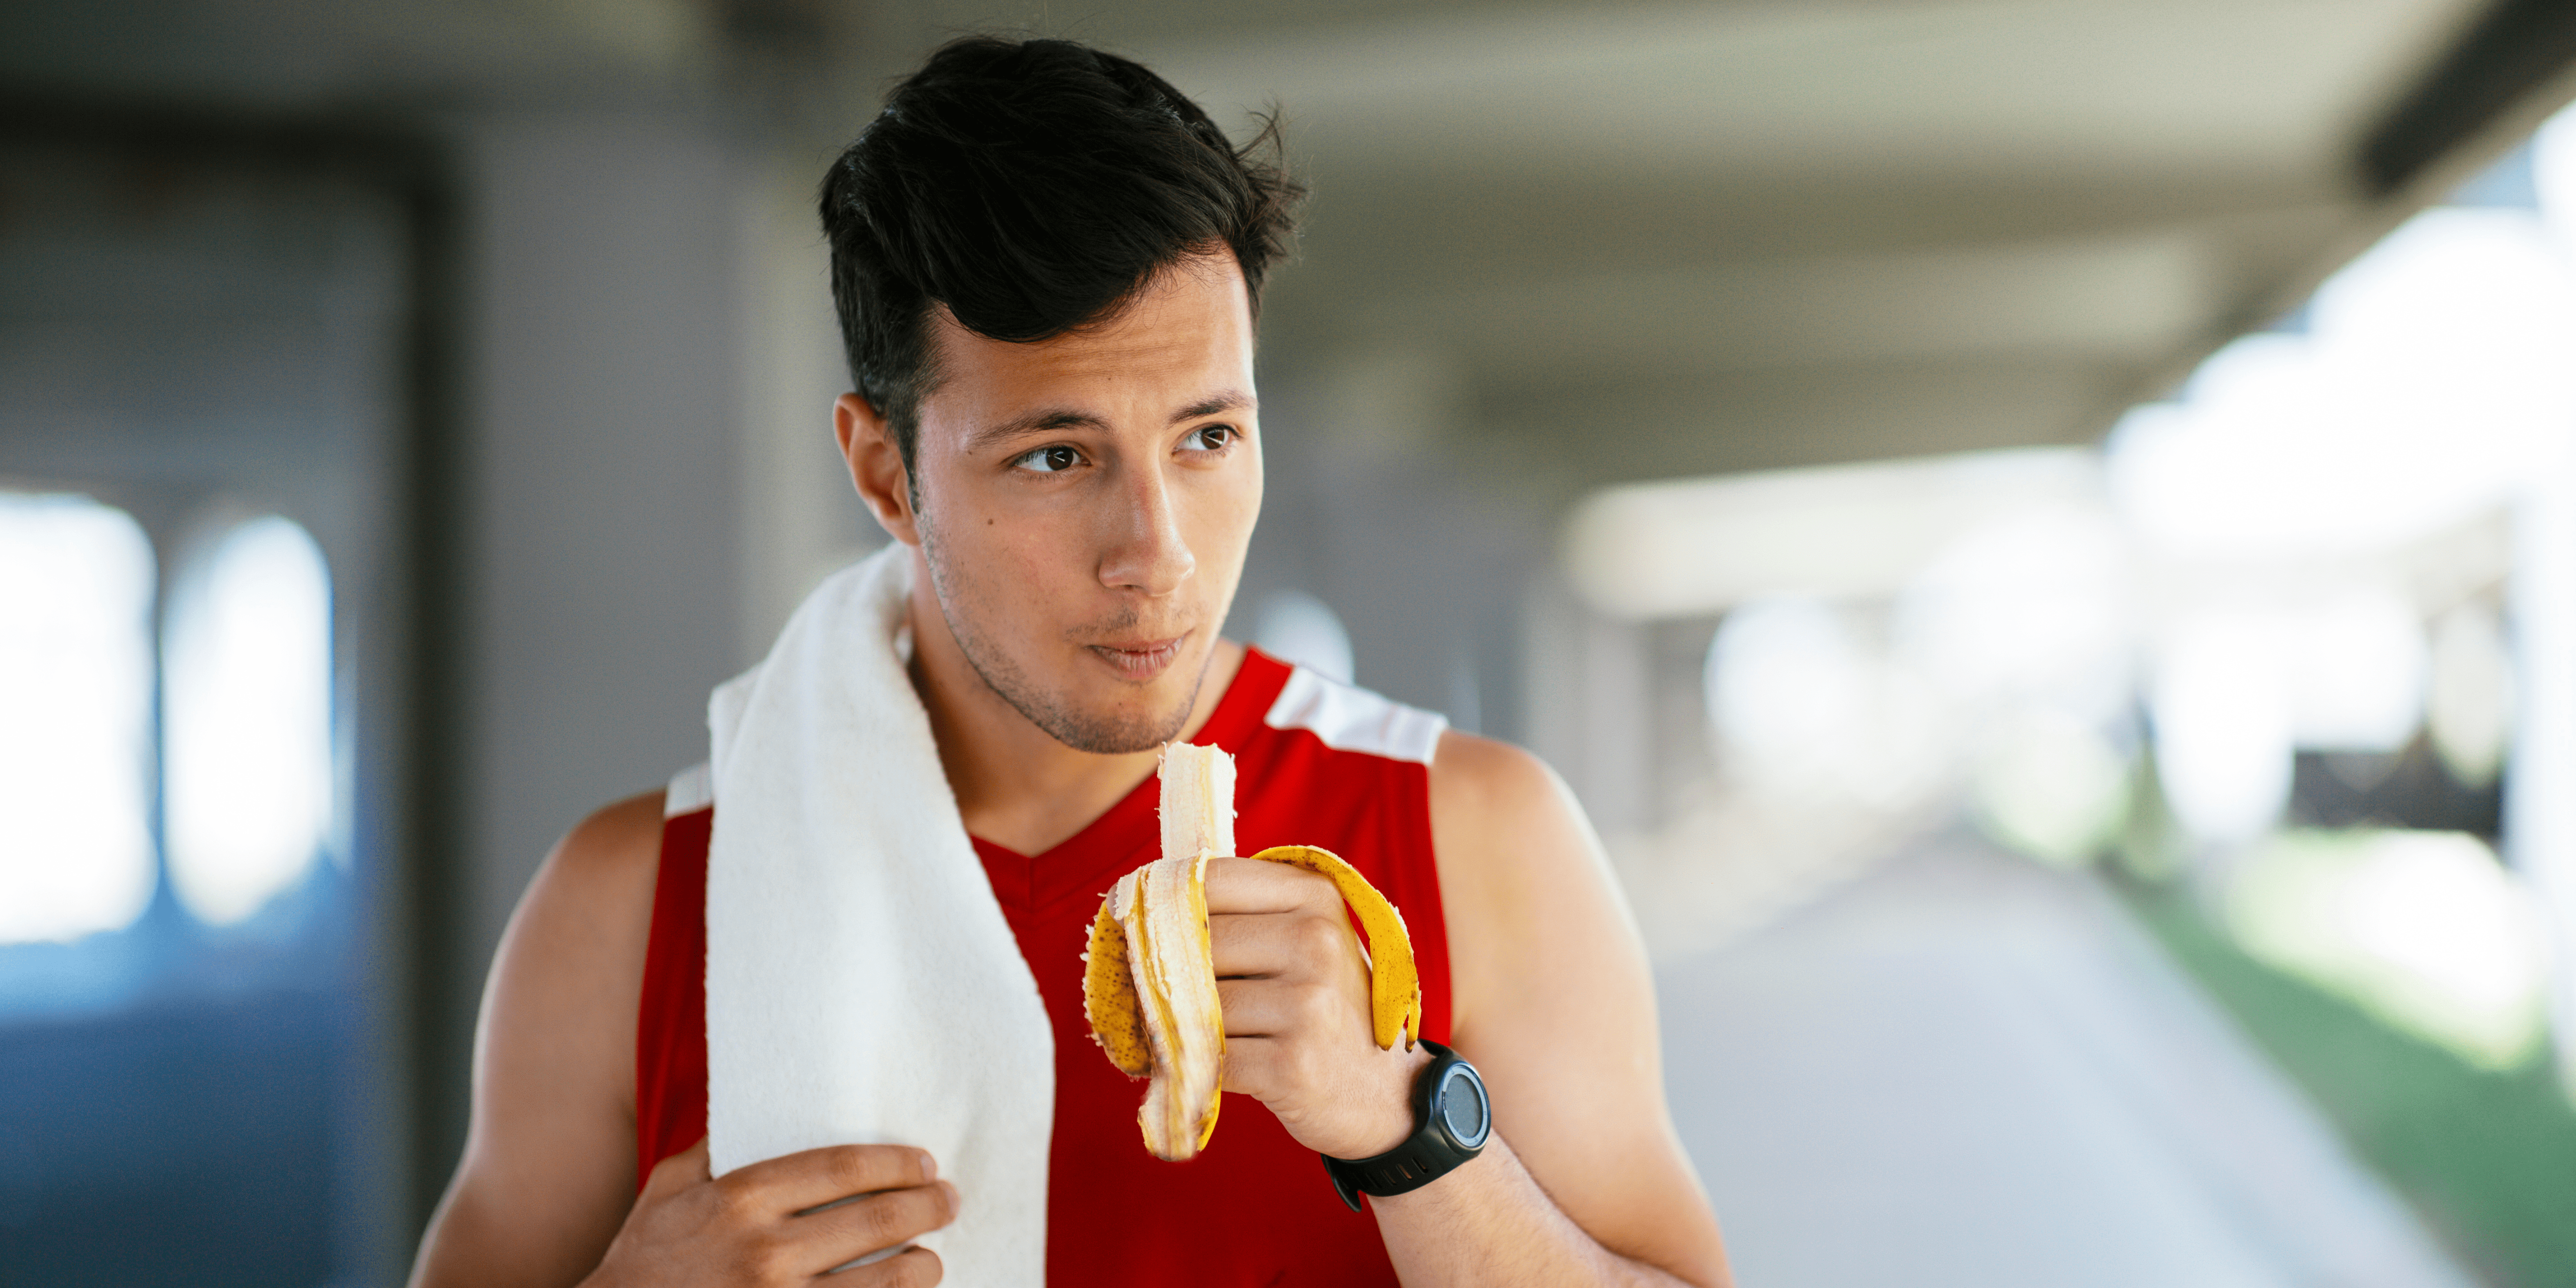 Banán edzés előtt vagy után? Edzés előtt banán!